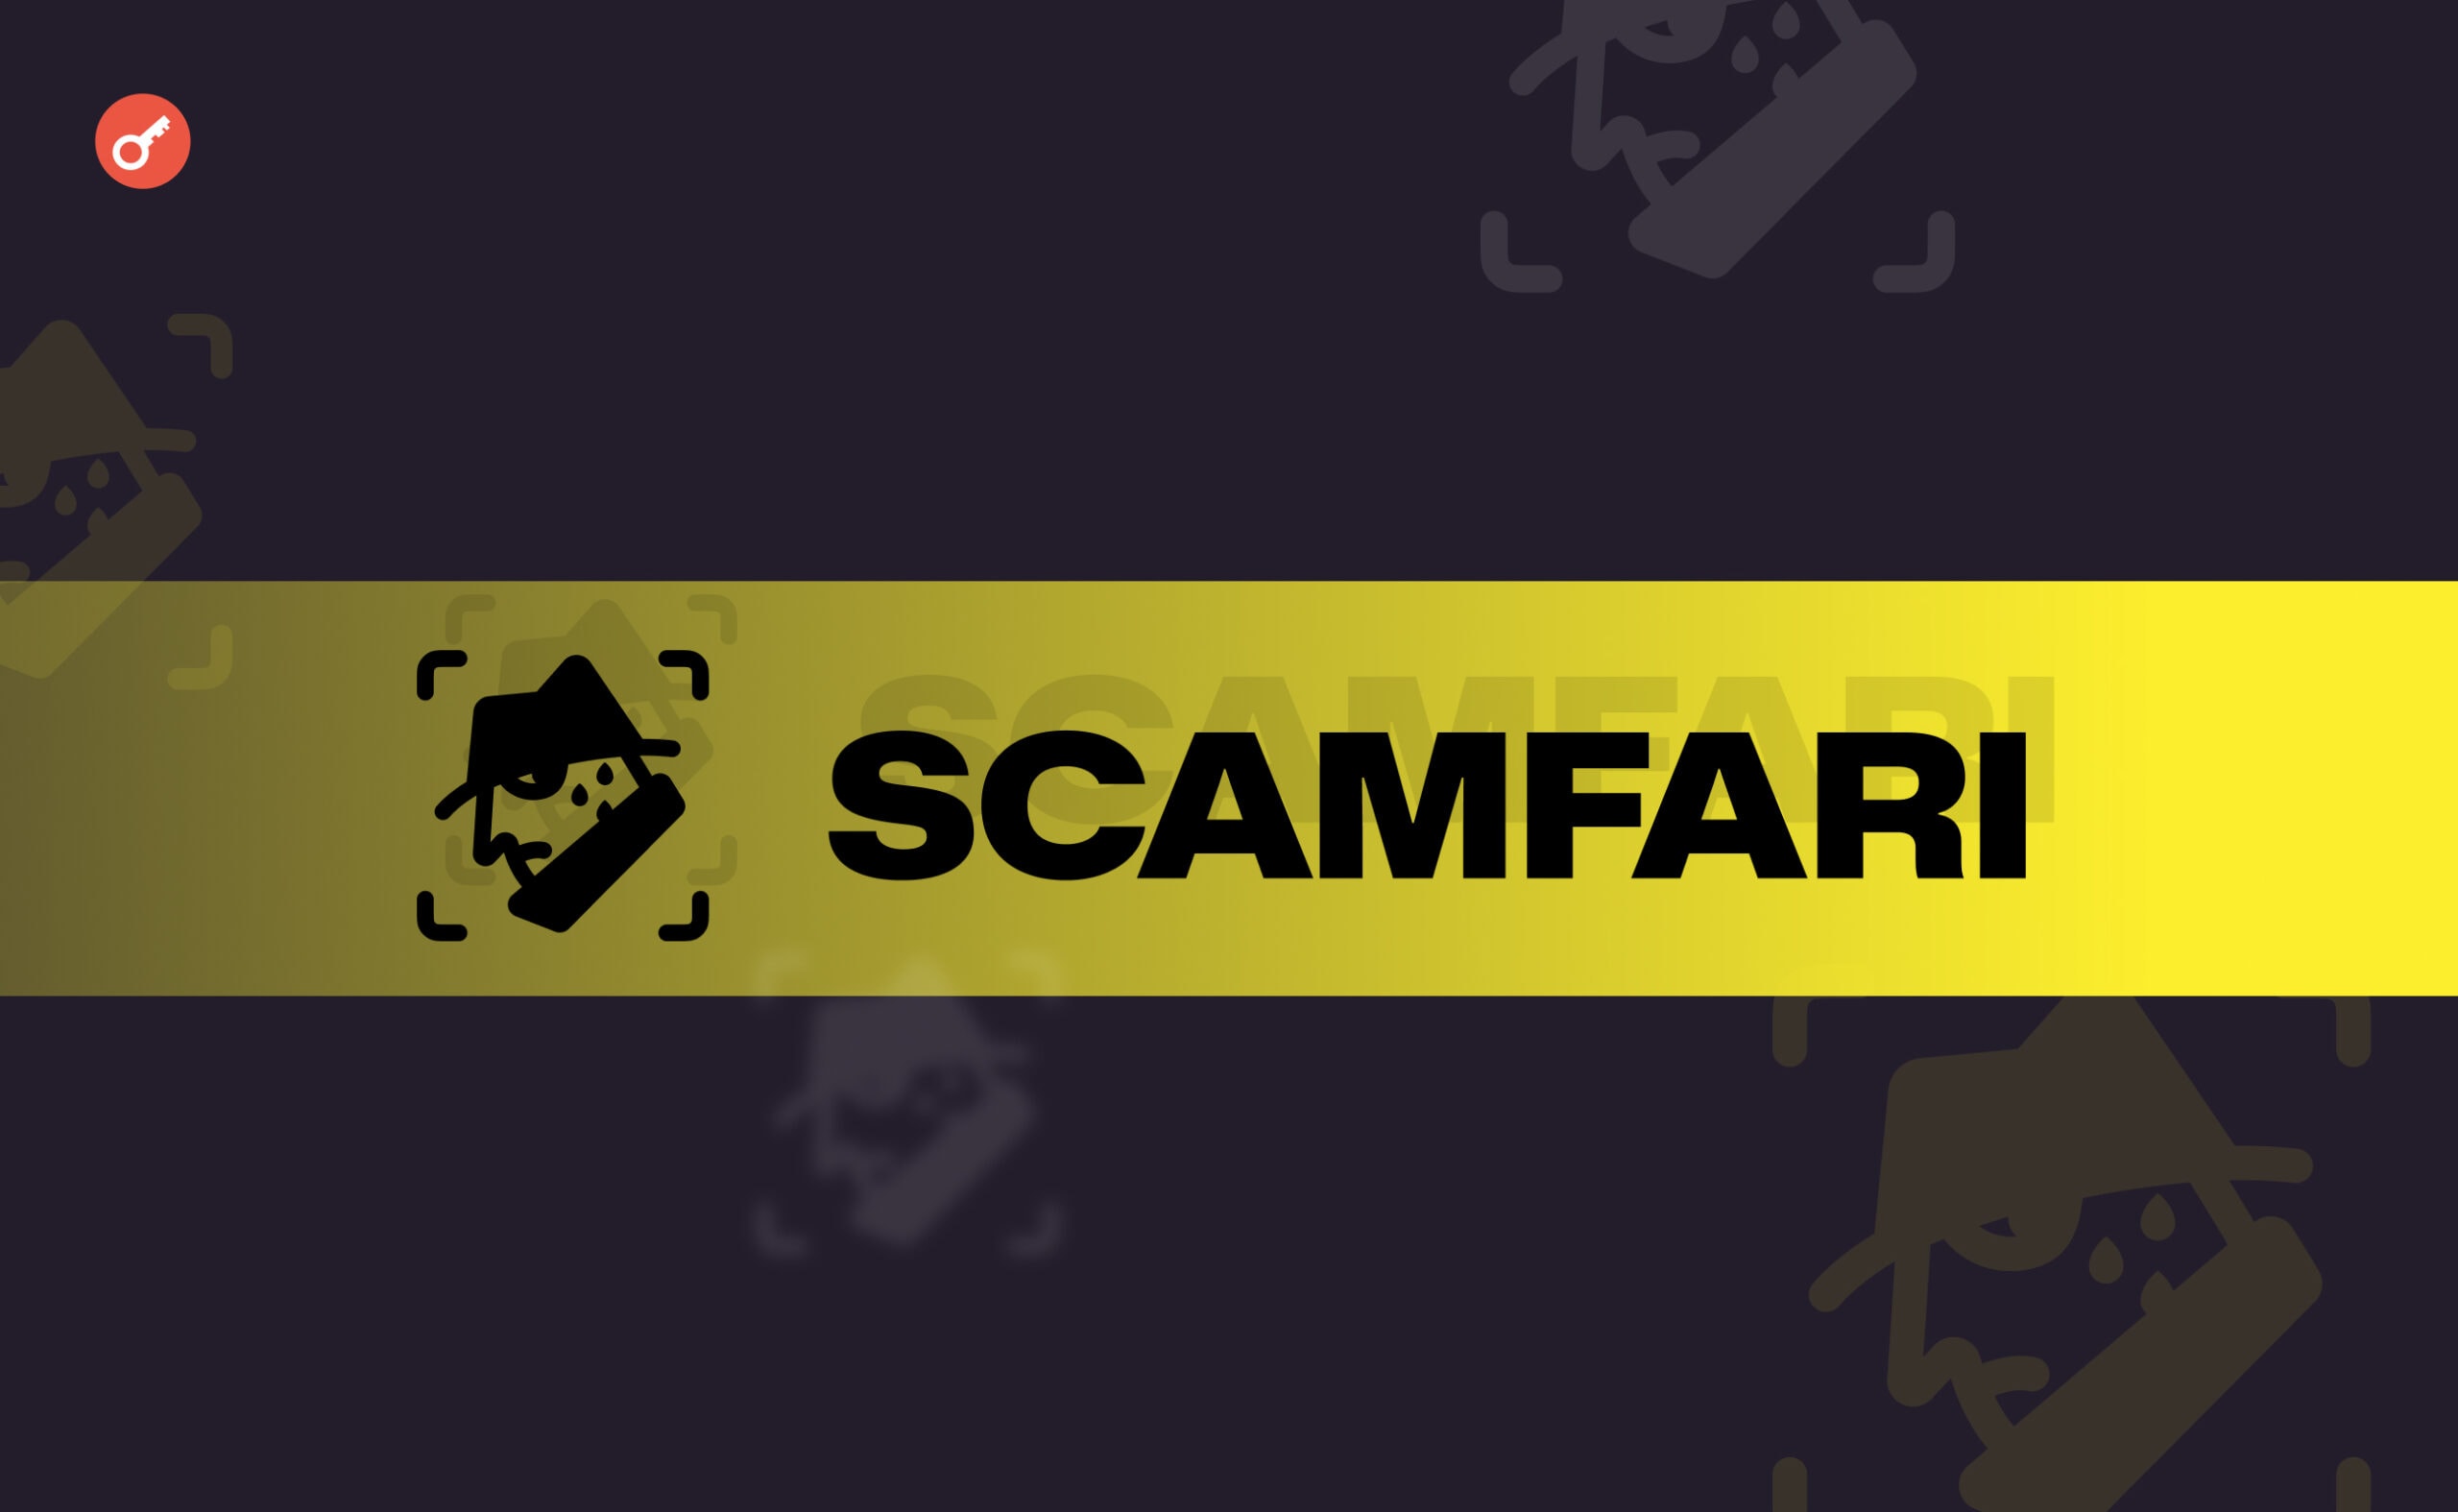 Scamfari — Репортим кошельки мошенников и получаем награды. Заглавный коллаж статьи.